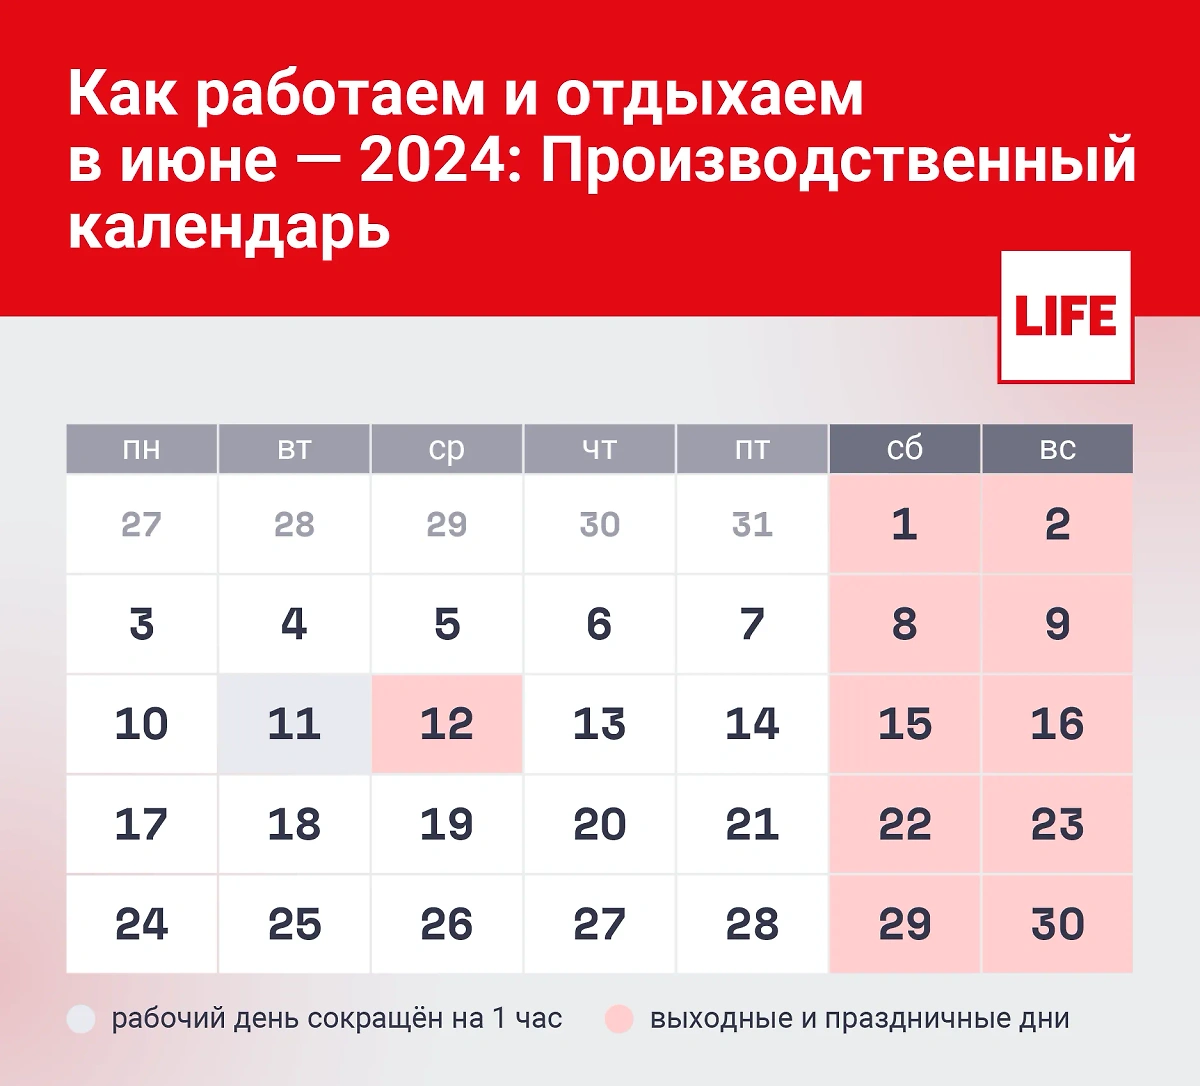 Как отдыхаем 12 июня 2024 года: производственный календарь. Инфографика © Life.ru 